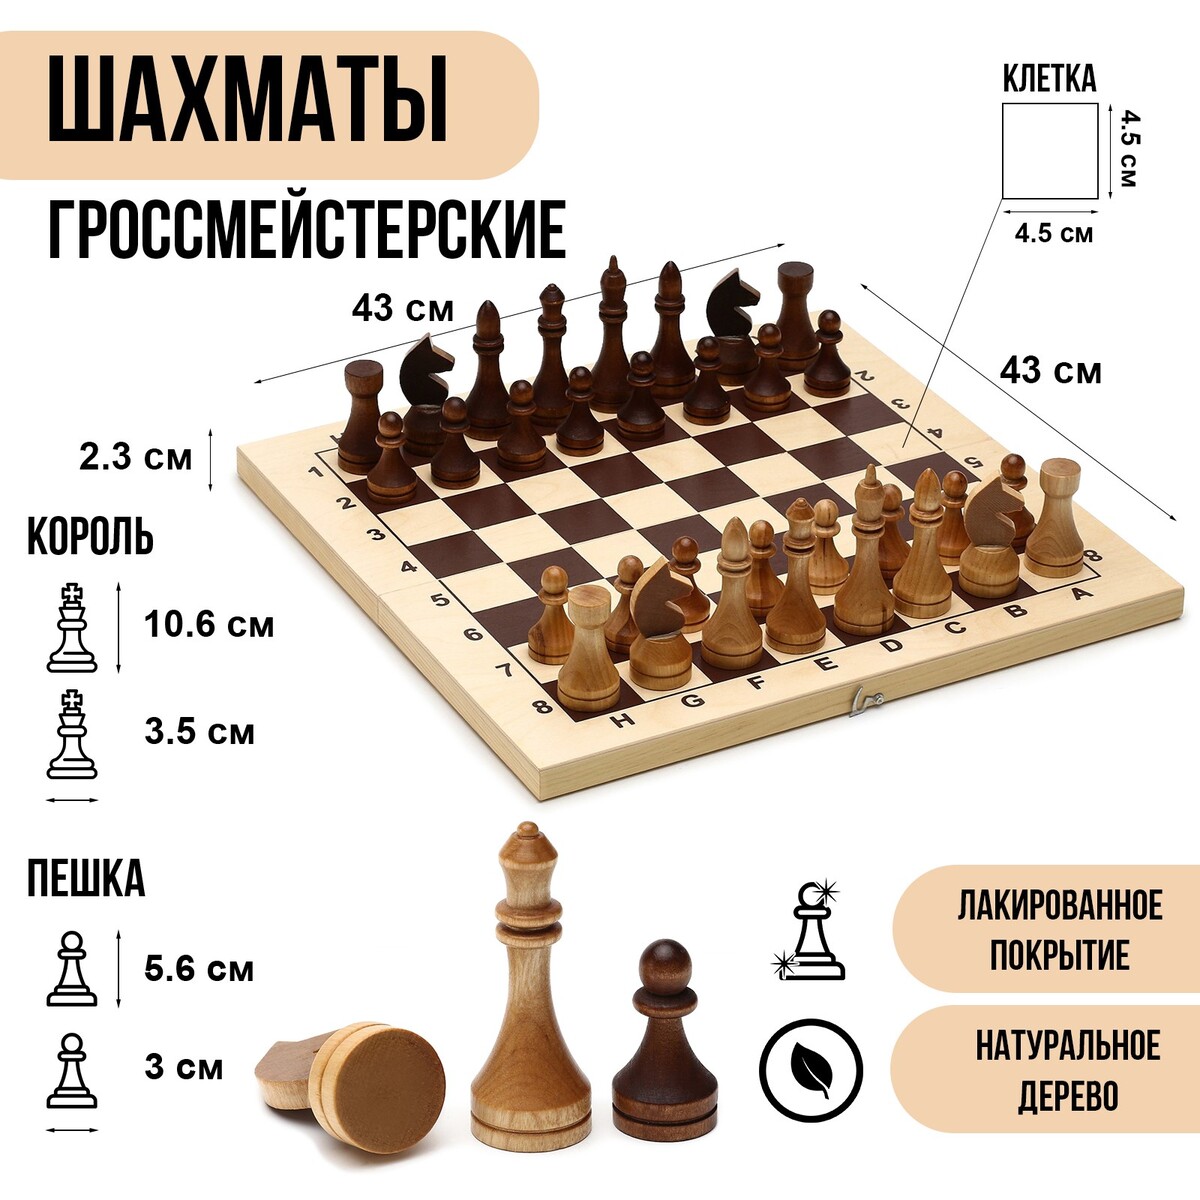 фото Шахматы деревянные гроссмейстерские, турнирные 43 х 43 см, король h-10.6 см, пешка h-5.6 см no brand